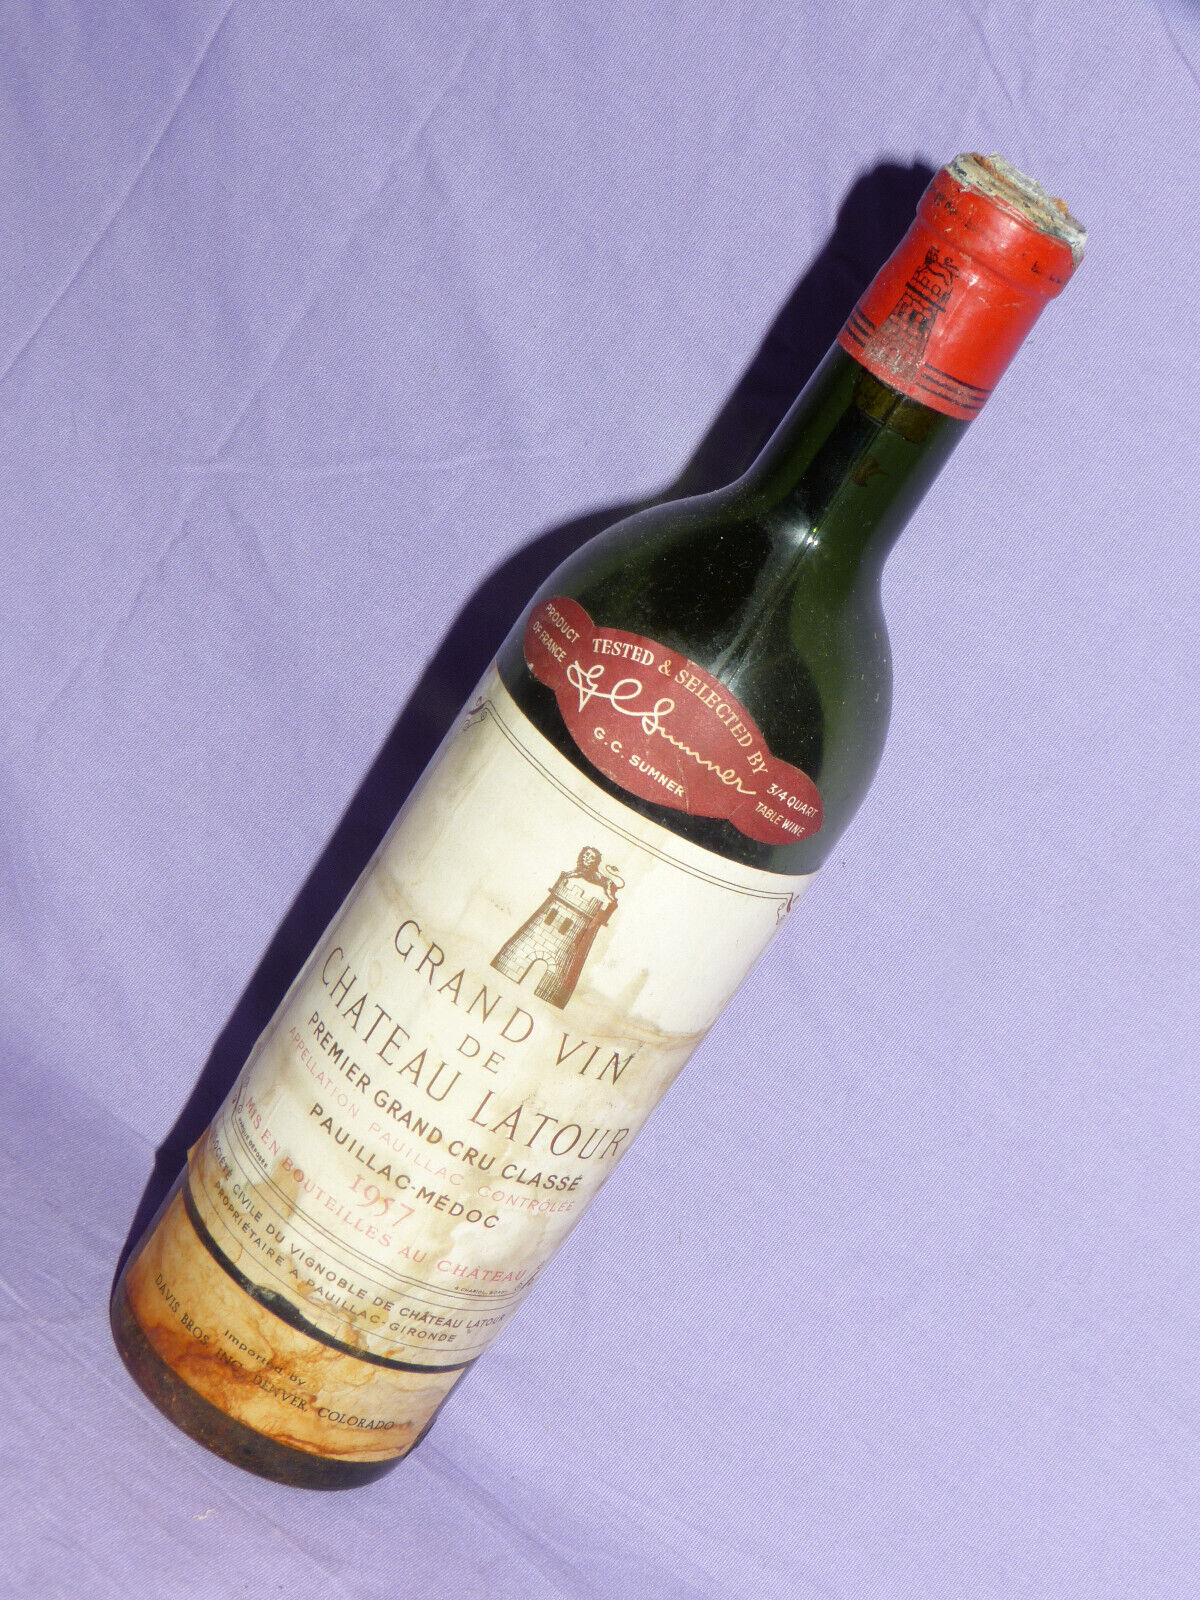 Chateau LATOUR 1957 Premier Grand Cru Empty Vintage Wine Bottle with cork